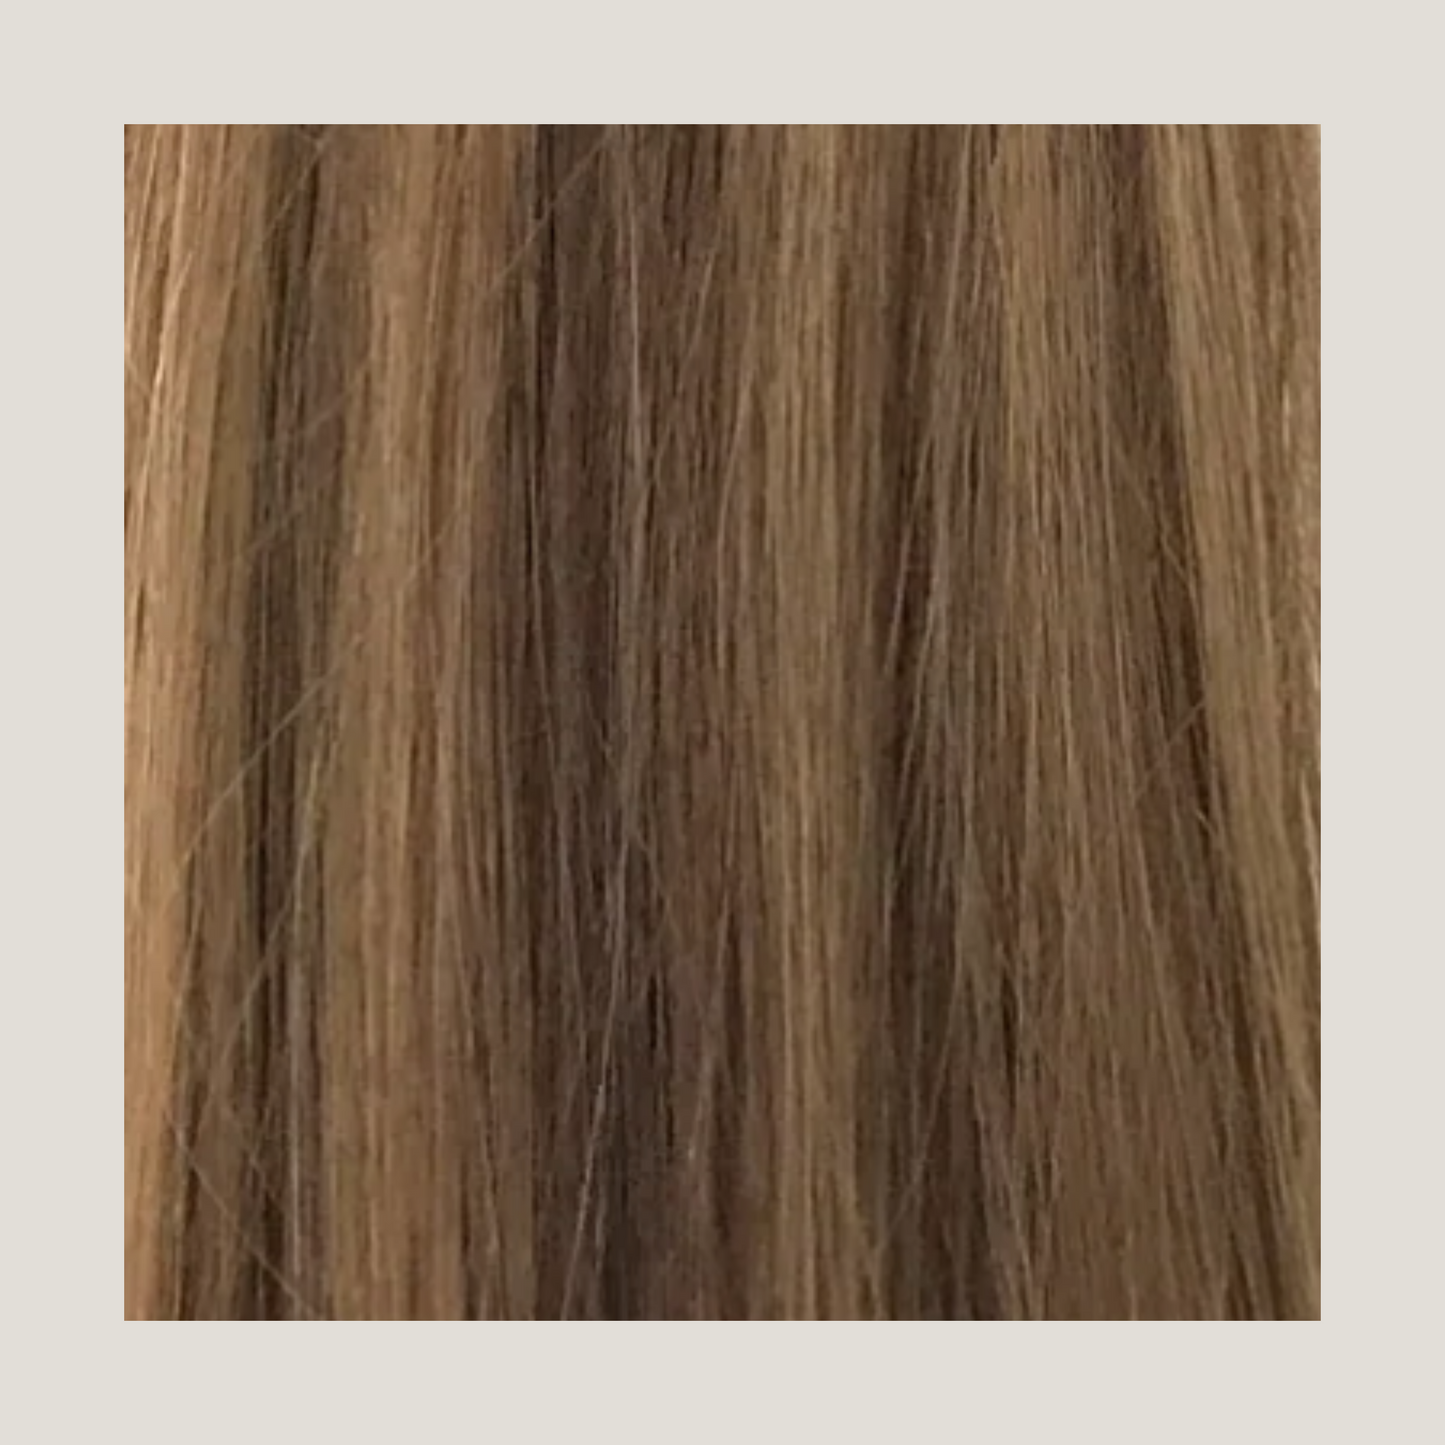 שיער אנושי של רמי בתולה אירופאי מצוייר כפול, תוספות שיער בדבק